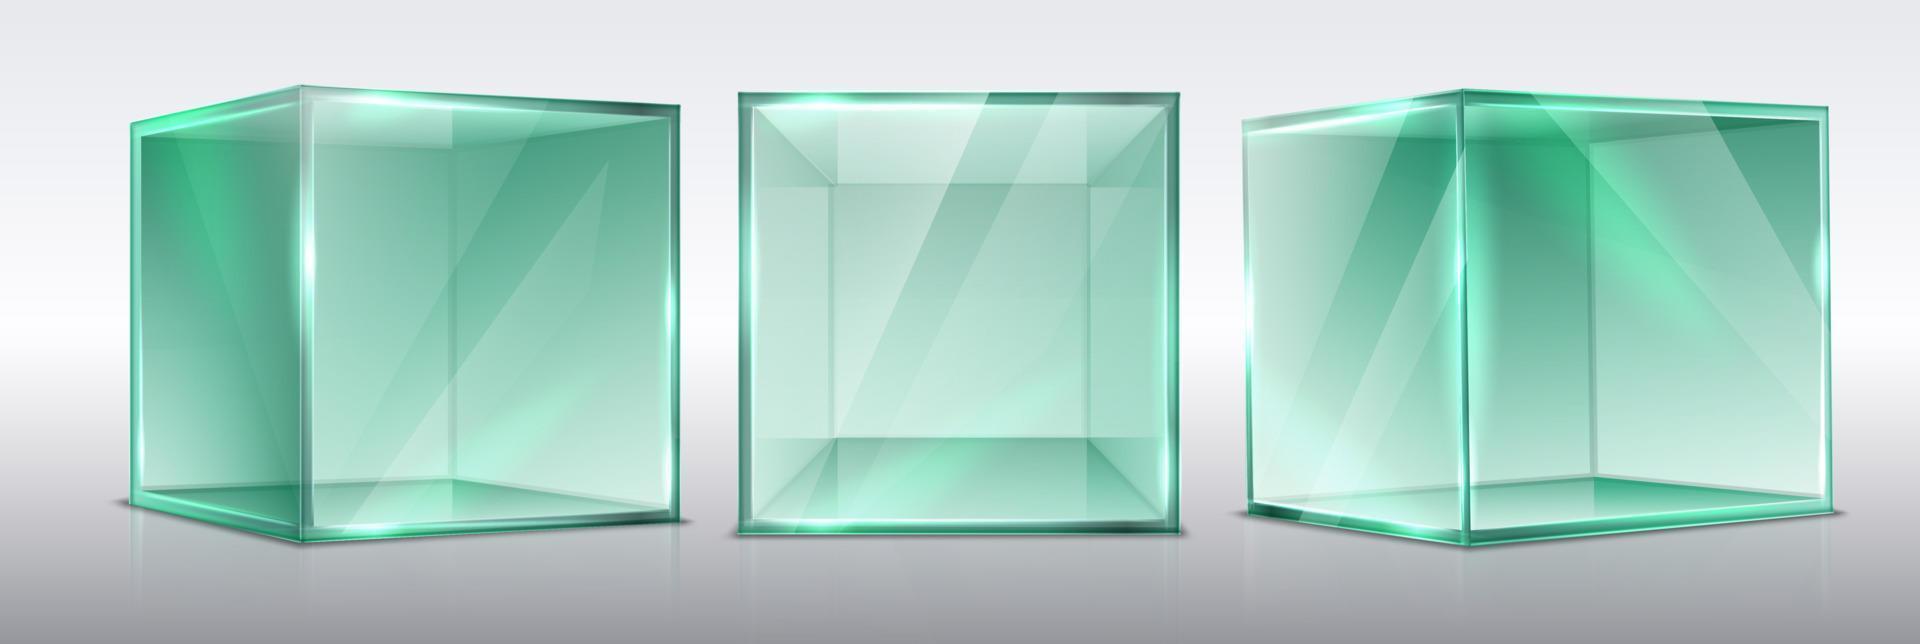 3D realistisk vektoruppsättning av transparenta glaspresentationskuber, isolerade. vektor